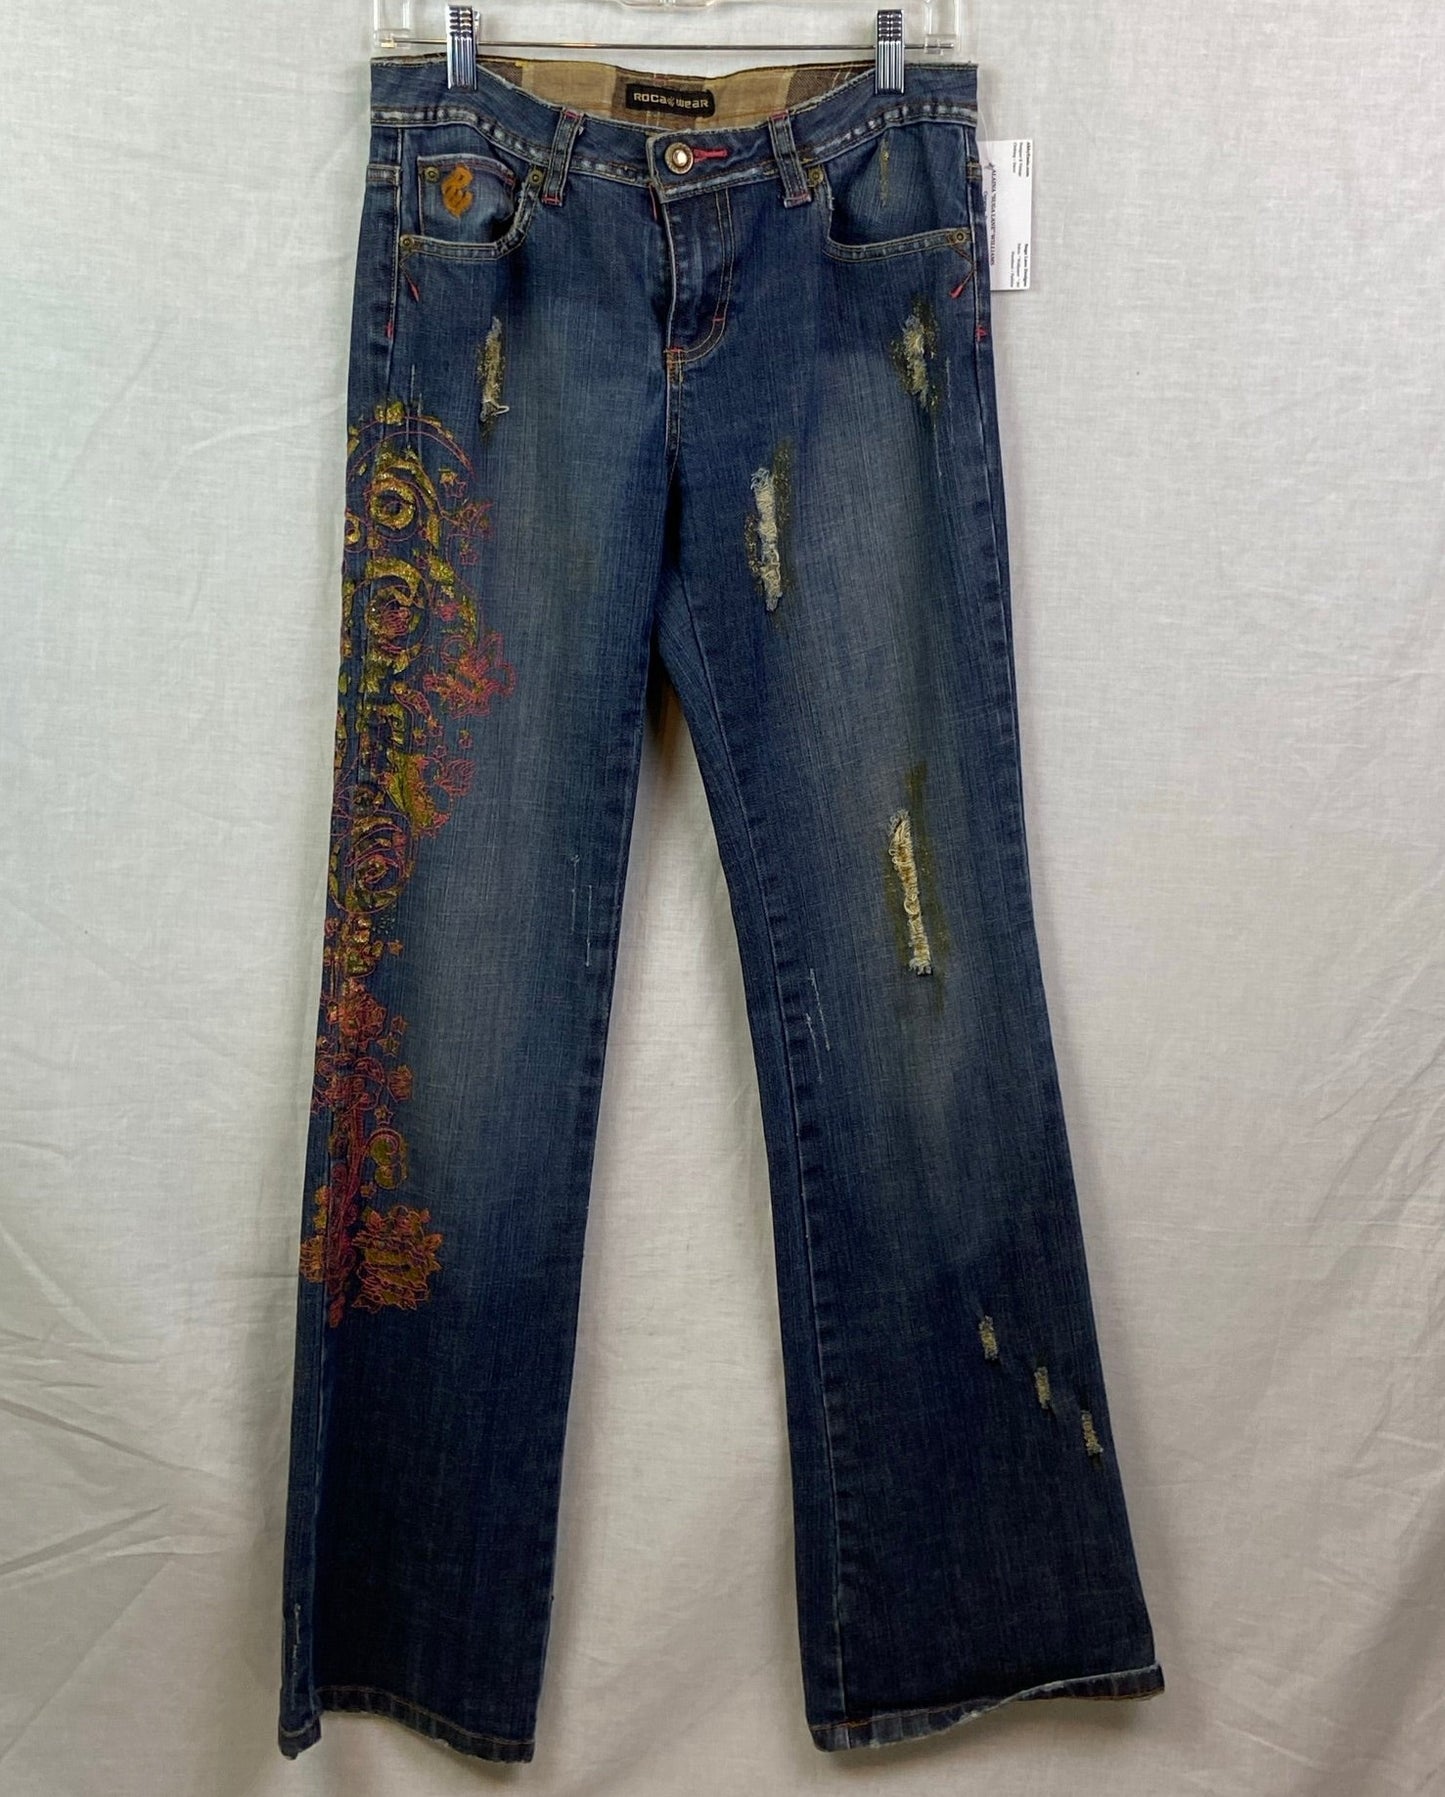 Vtg Rocawear Embroidered Gold Pink Blue Jeans Denim